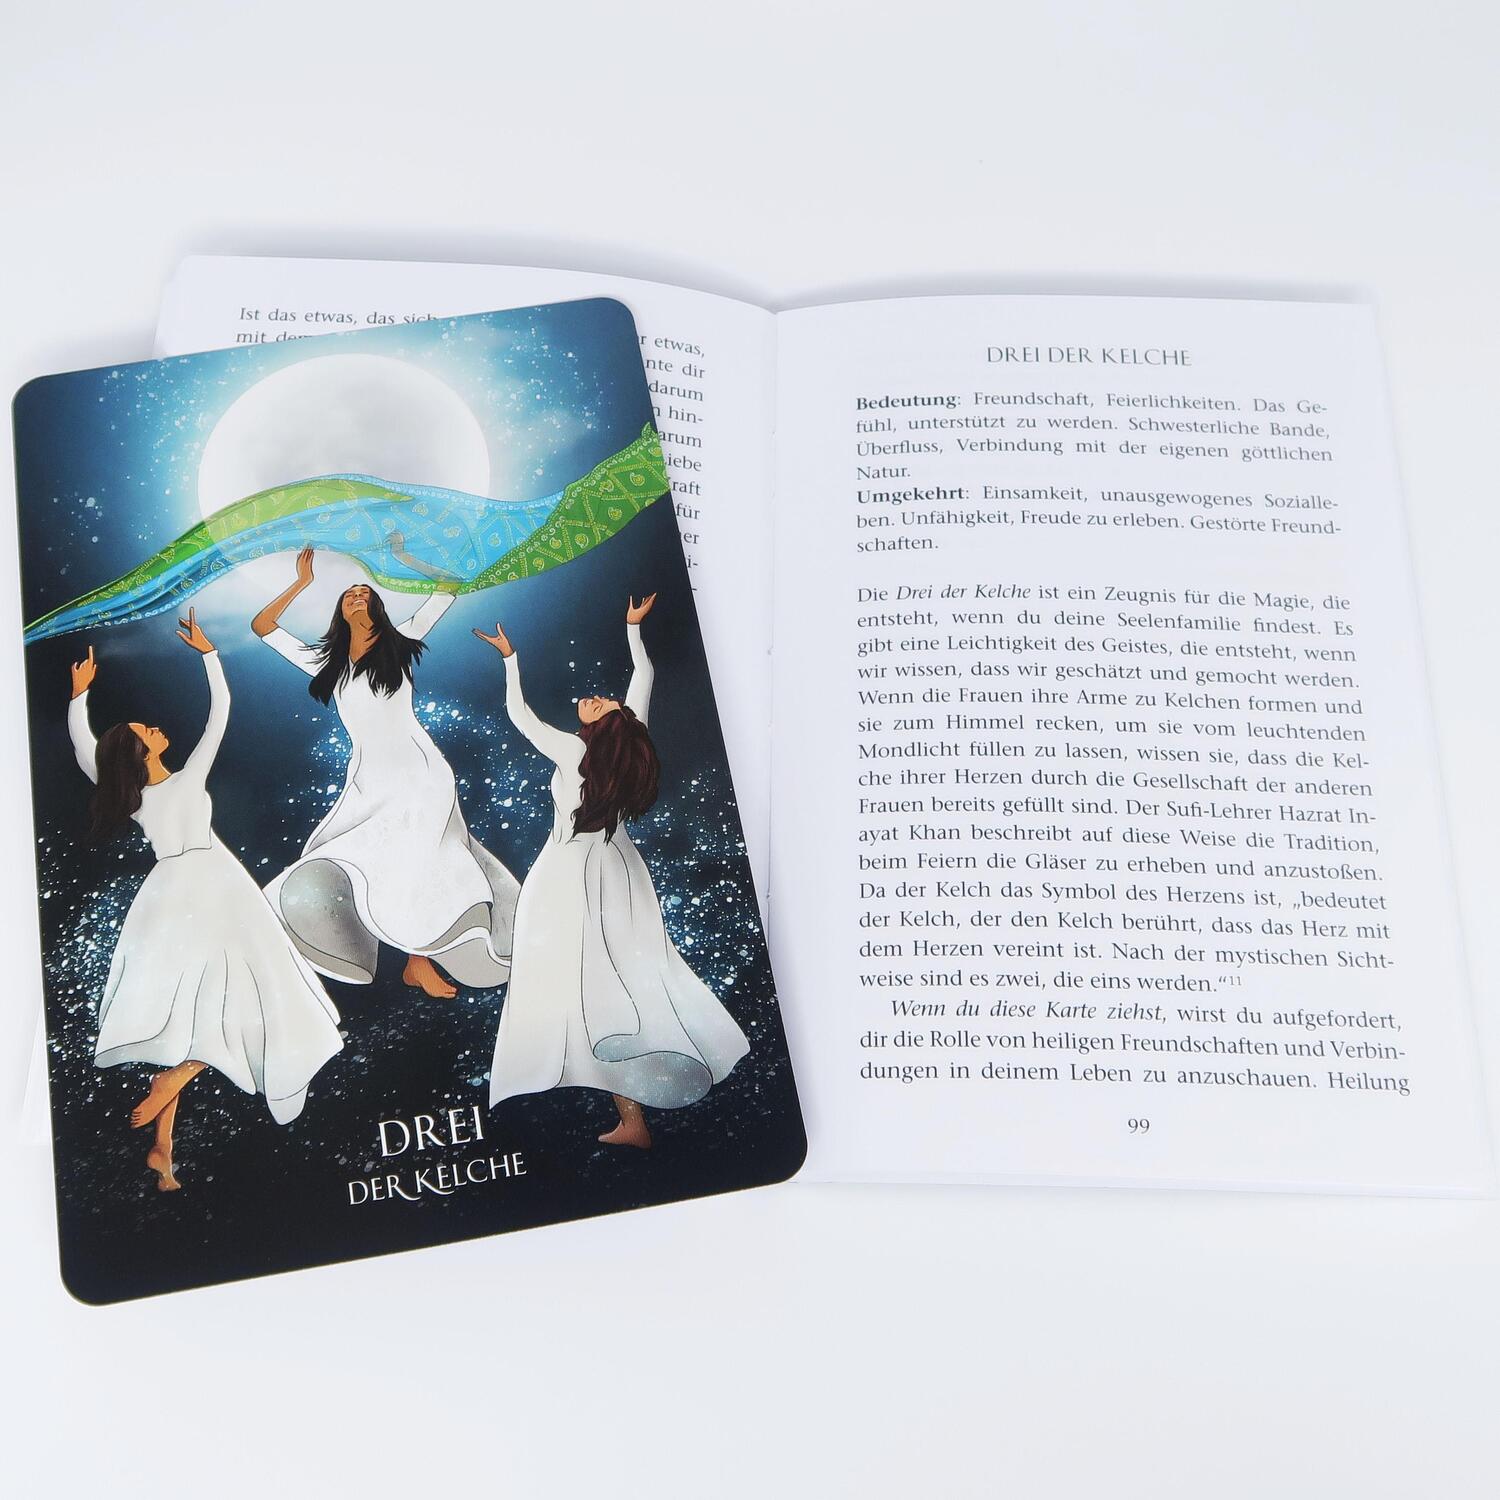 Bild: 9783868265835 | Sufi-Tarot - Der Weg des Herzens: 78 Tarotkarten mit Anleitung | Buch